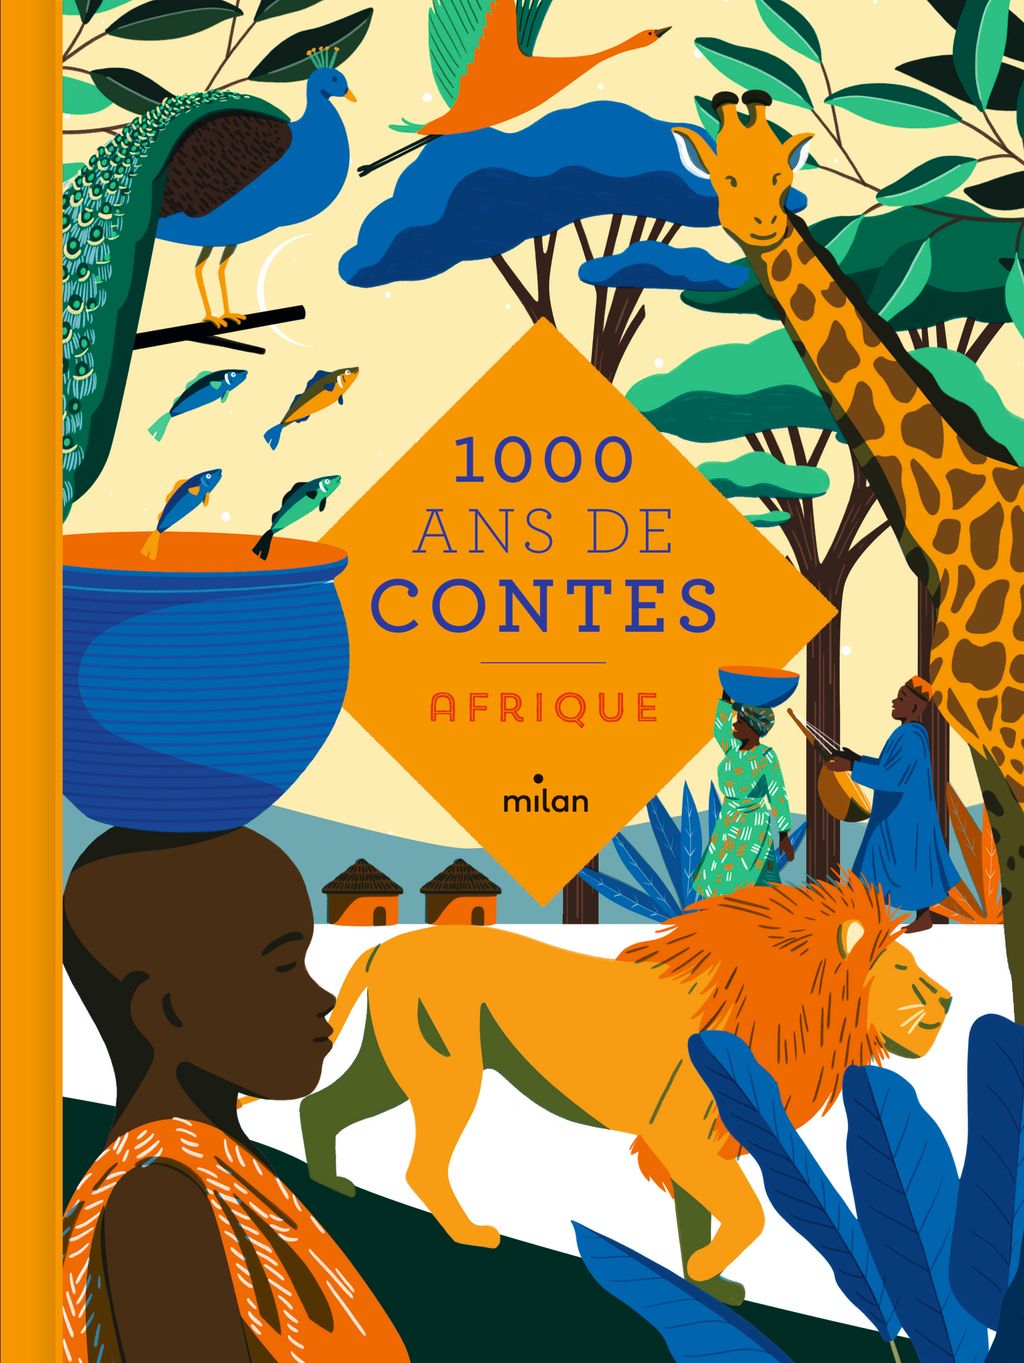 « Mille ans de contes Afrique » cover